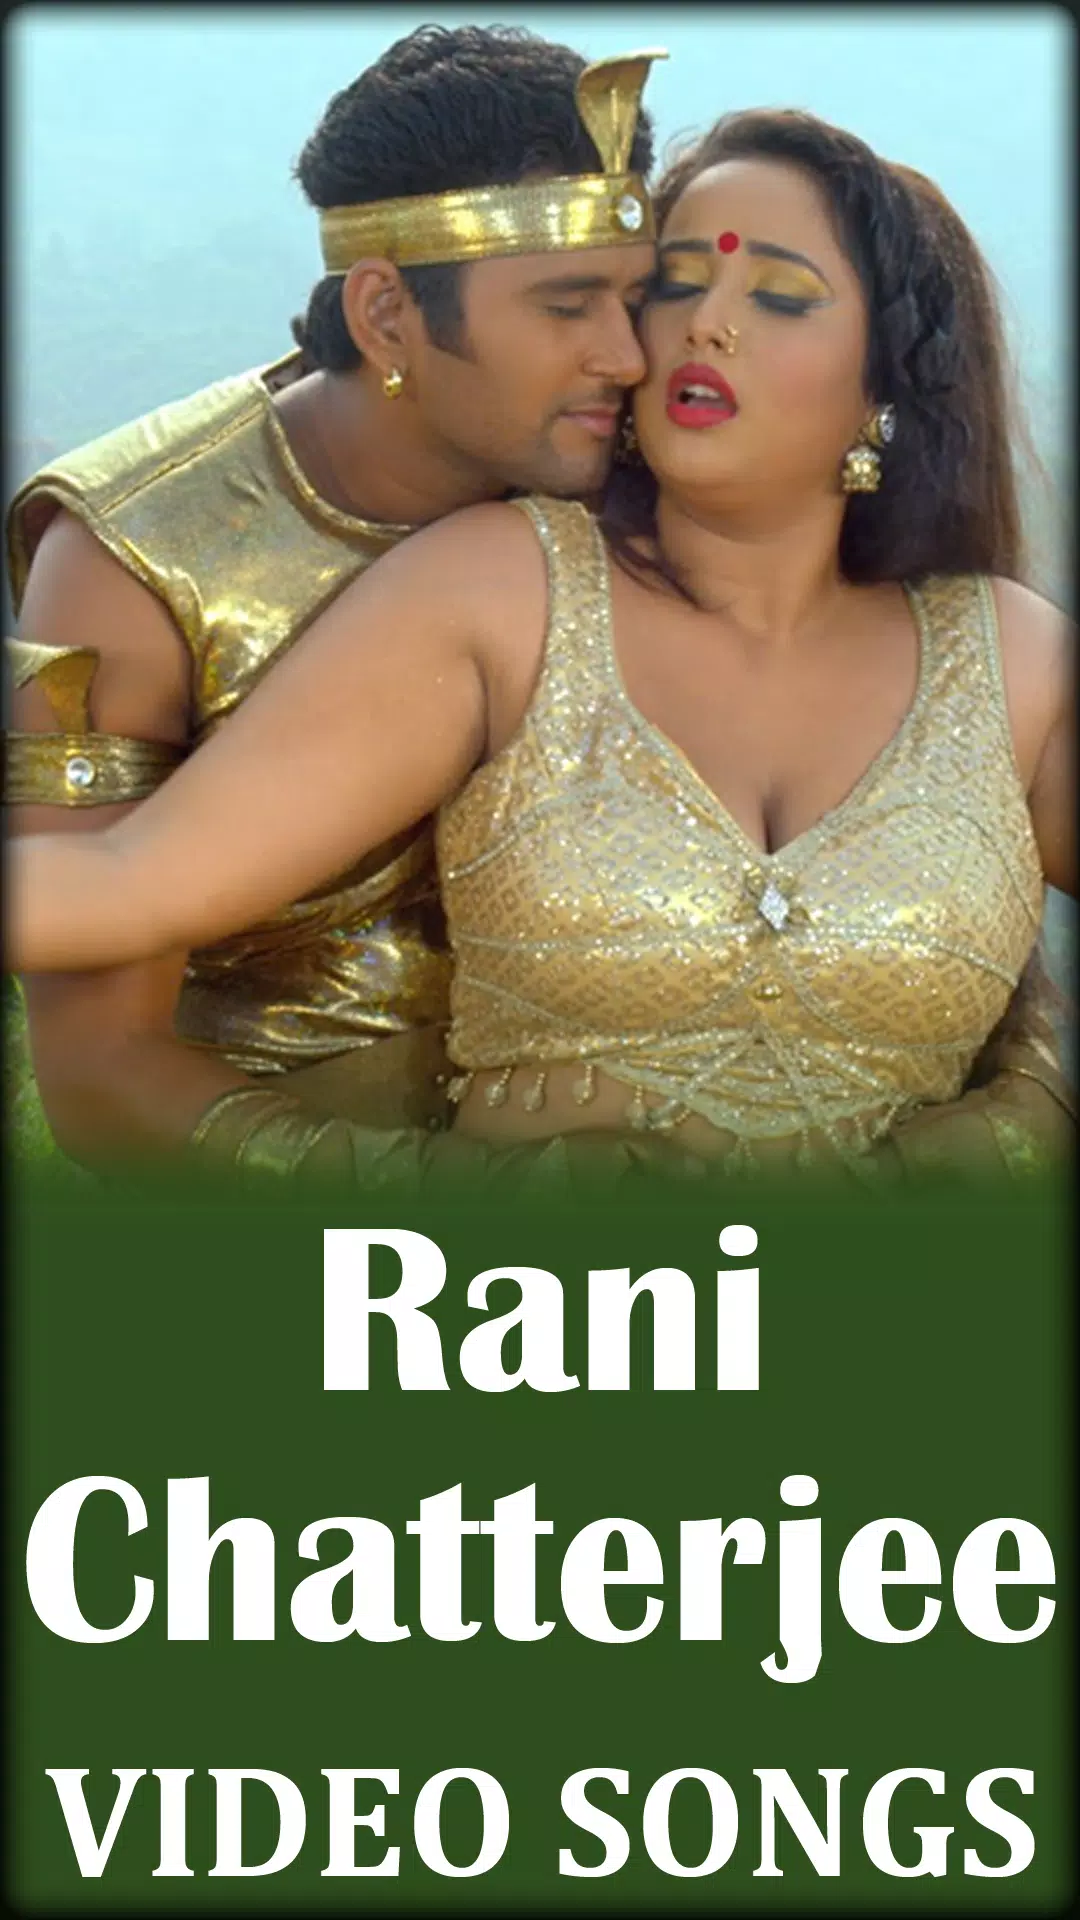 1080px x 1920px - Rani Chatterjee Songs - Bhojpuri Sexy Video Song APK Ù„Ù„Ø§Ù†Ø¯Ø±ÙˆÙŠØ¯ ØªÙ†Ø²ÙŠÙ„